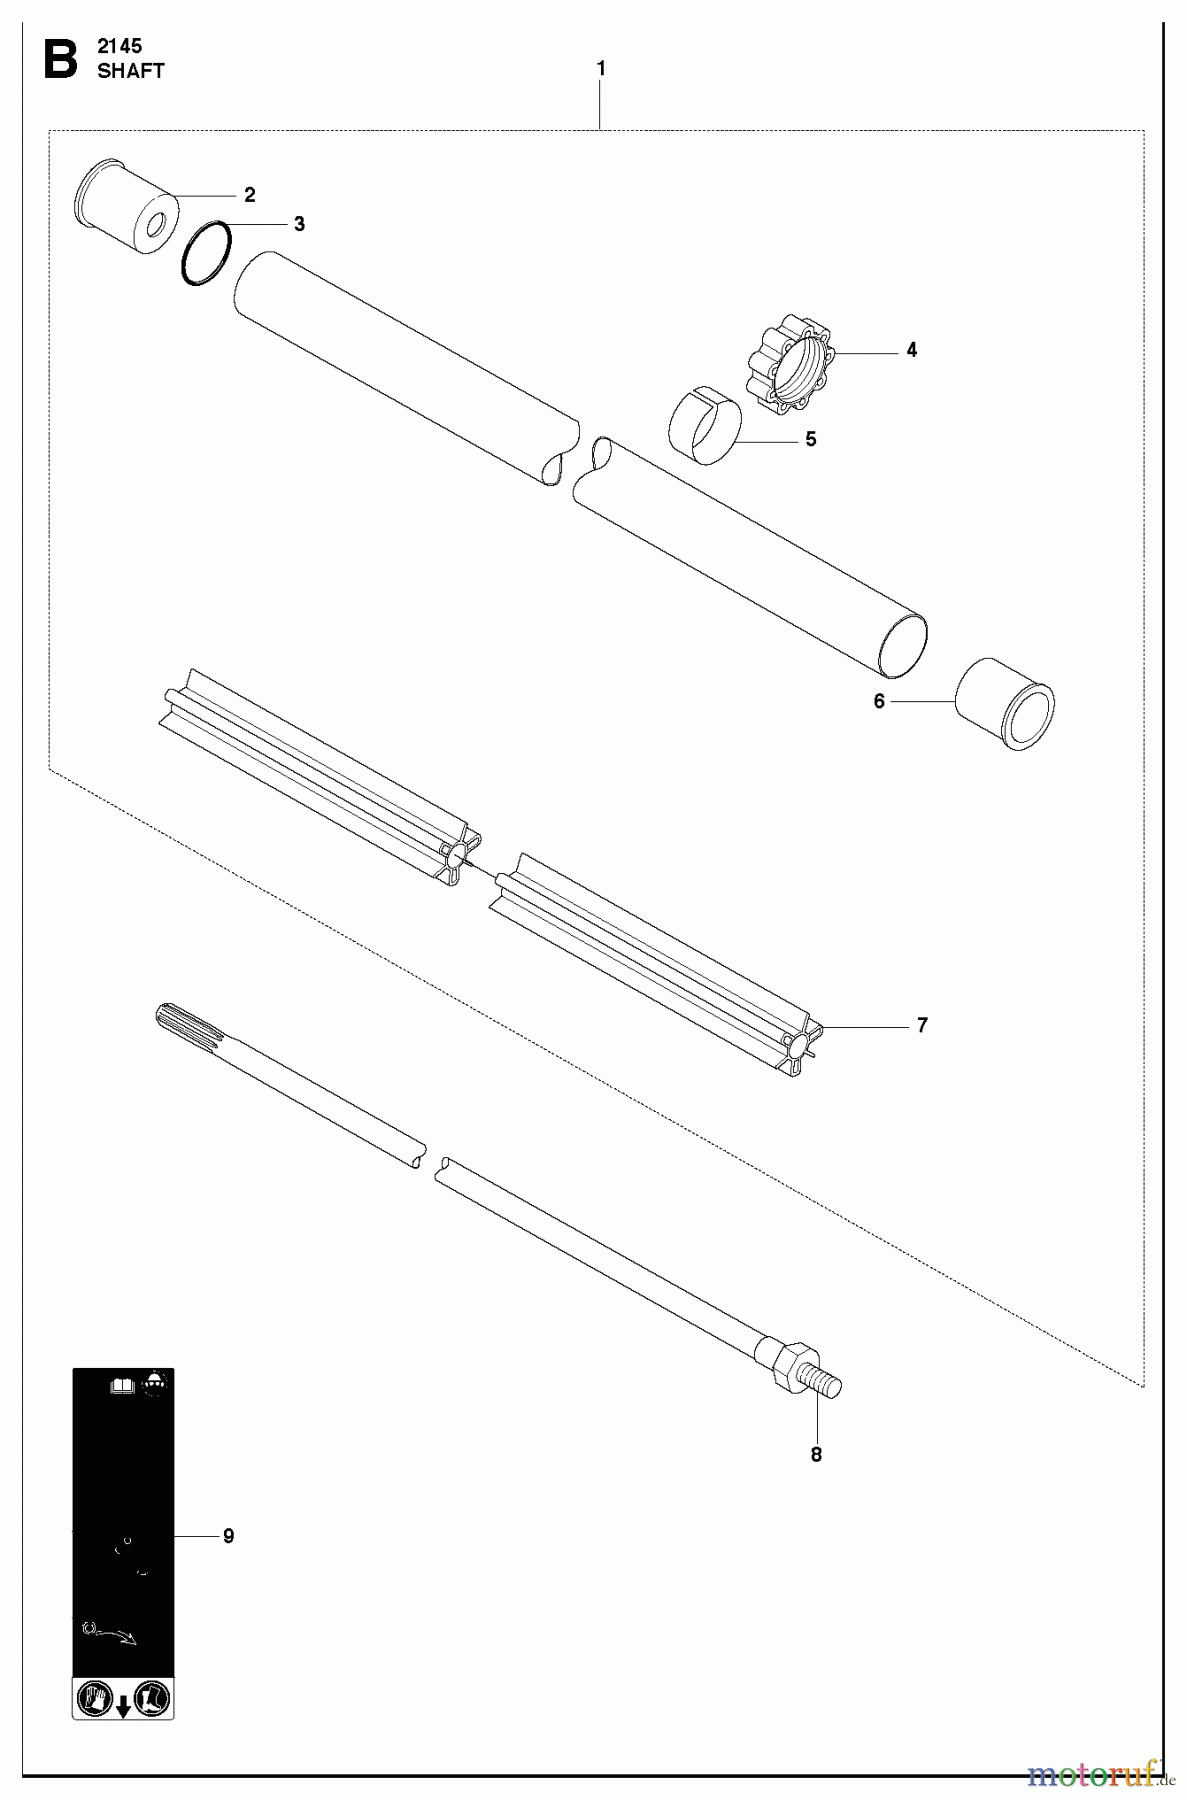  Jonsered Motorsensen, Trimmer FC2145W - Jonsered String/Brush Trimmer (2010-09) SHAFT